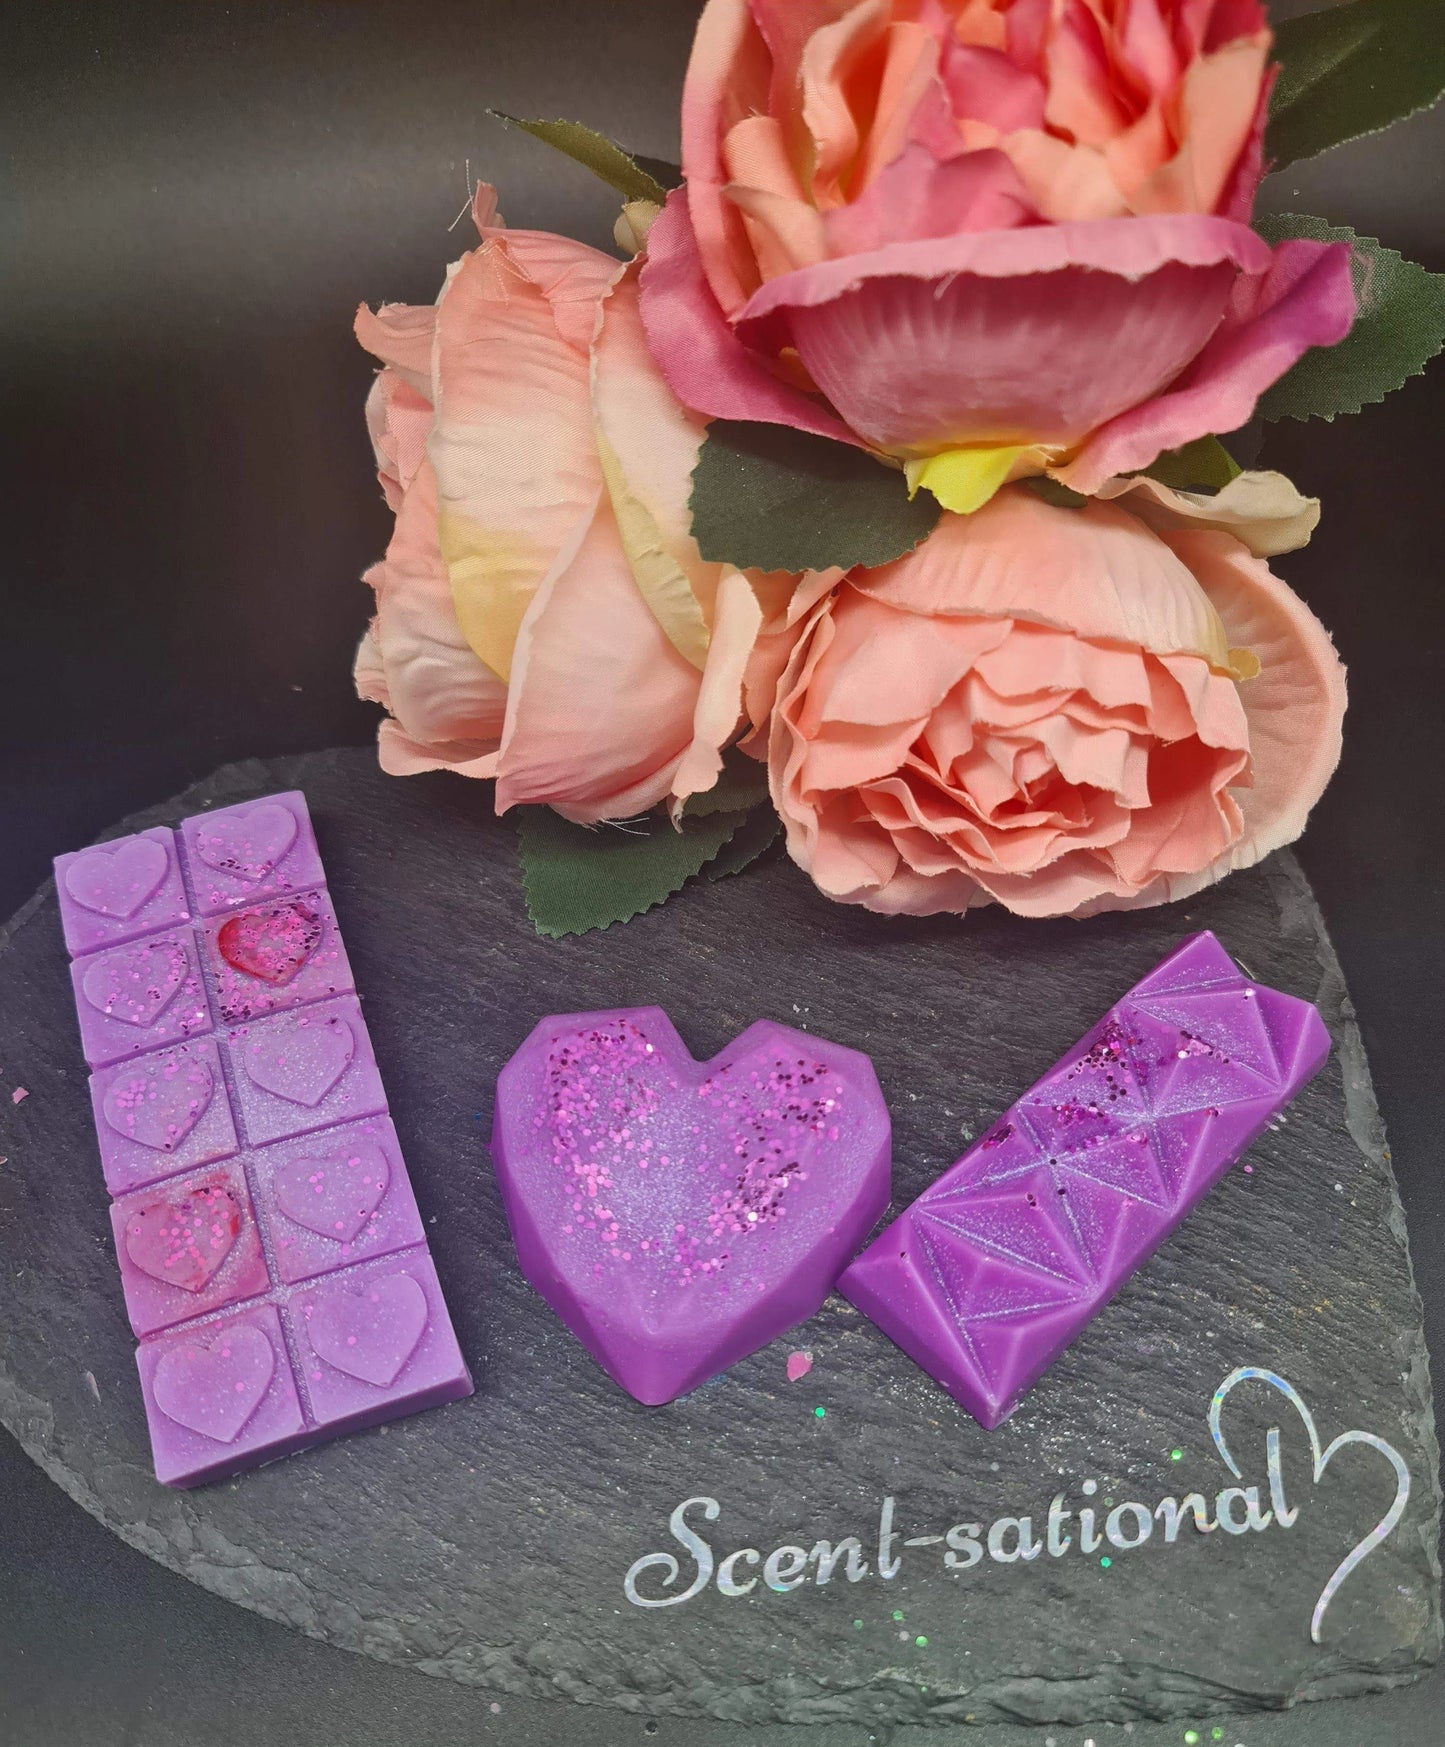 Rose Wonderland Wax Melts Scent Sational Wax melts